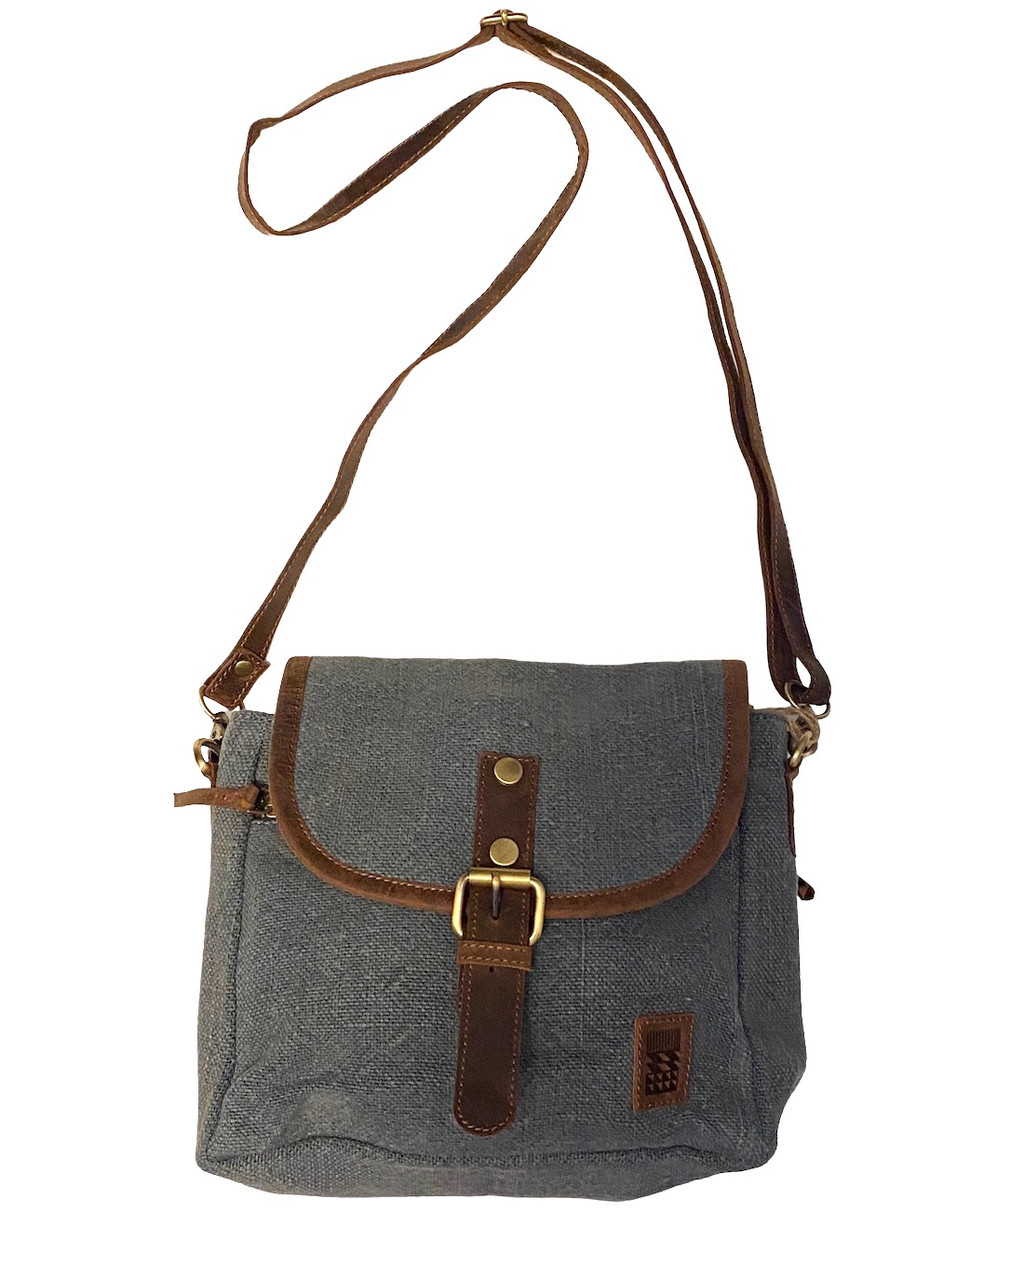 Shoulder bag Bags for Women in grey color